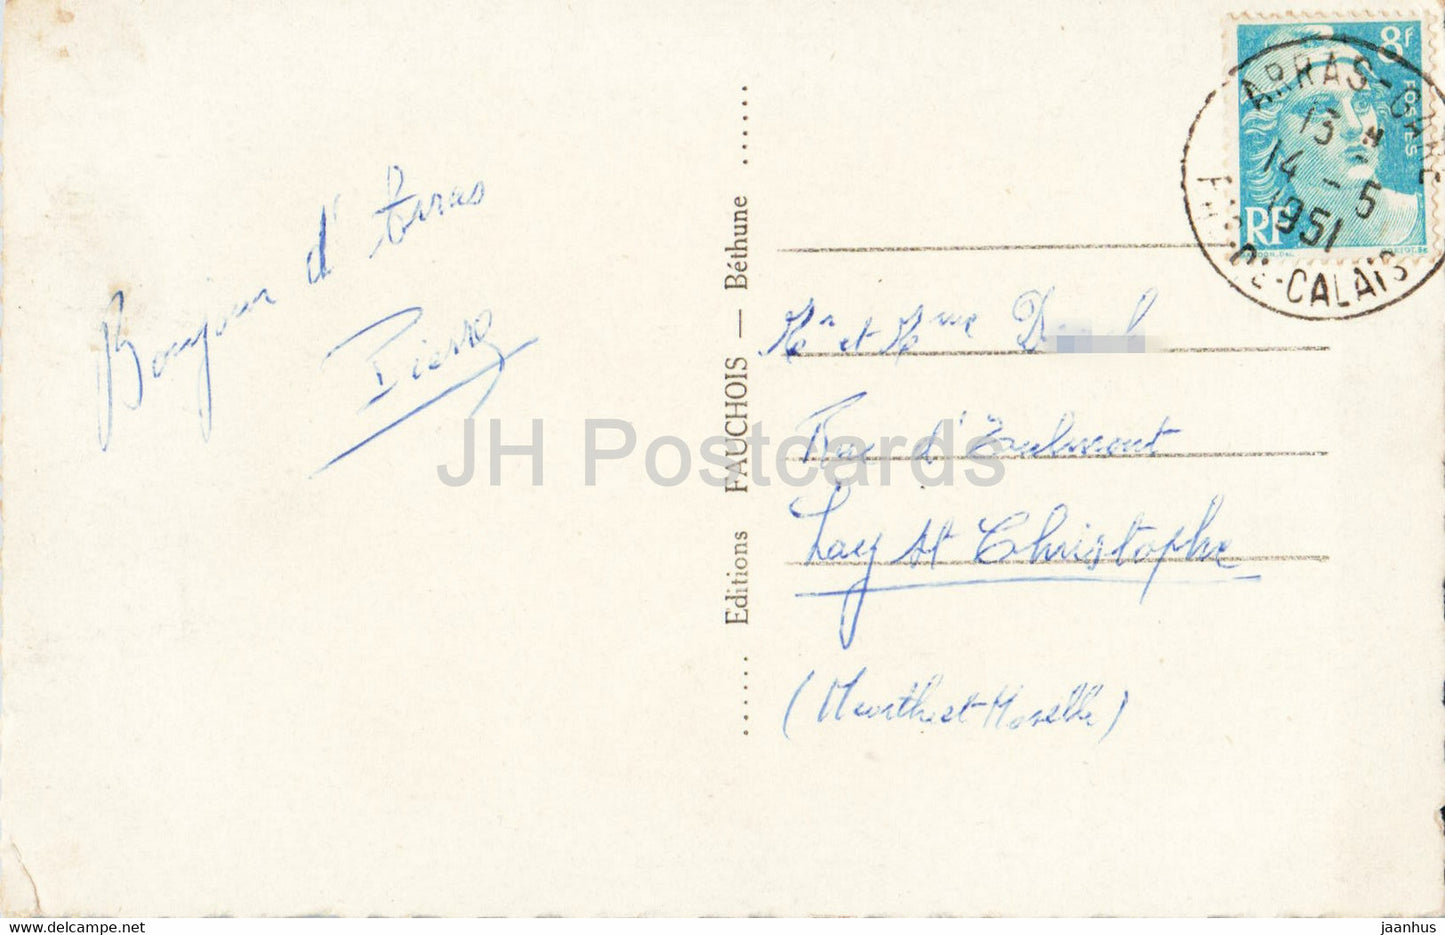 L'Ami Bidasse vous envoie son coeur d'Arras - chef lieu du Pas de Calais - old postcard - 1951 - France - used